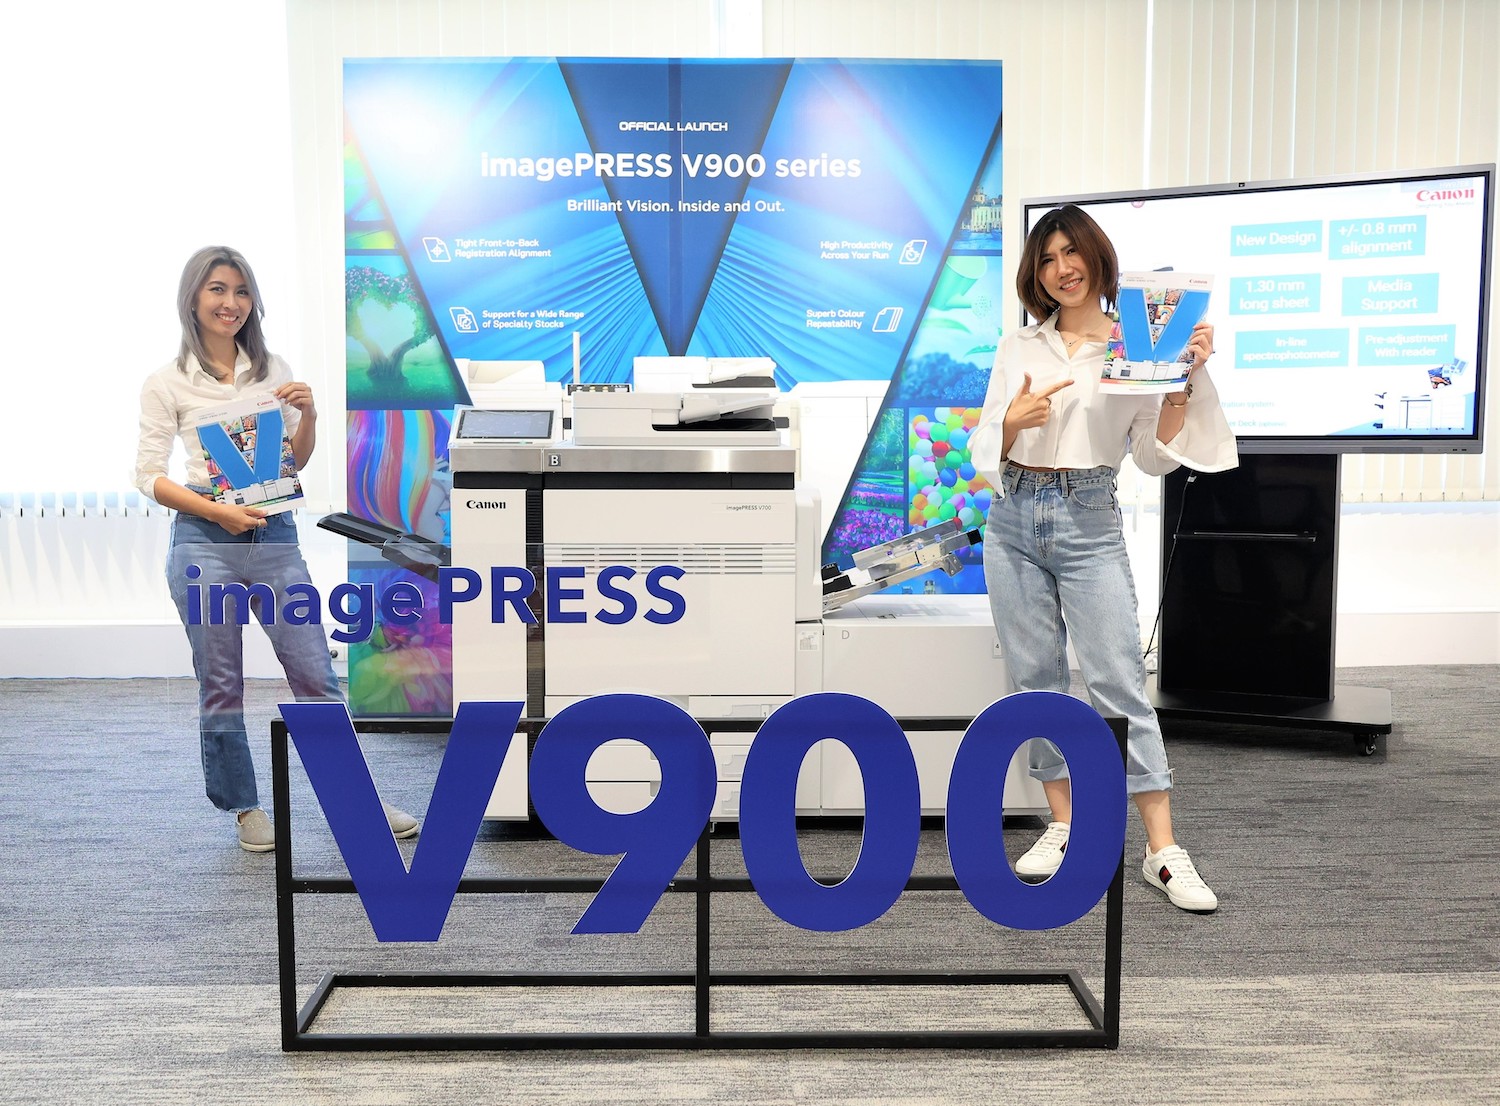 แคนนอน เปิดตัว imagePRESS V900 Series เครื่องพิมพ์โปรดักชัน รุ่นใหม่ล่าสุด